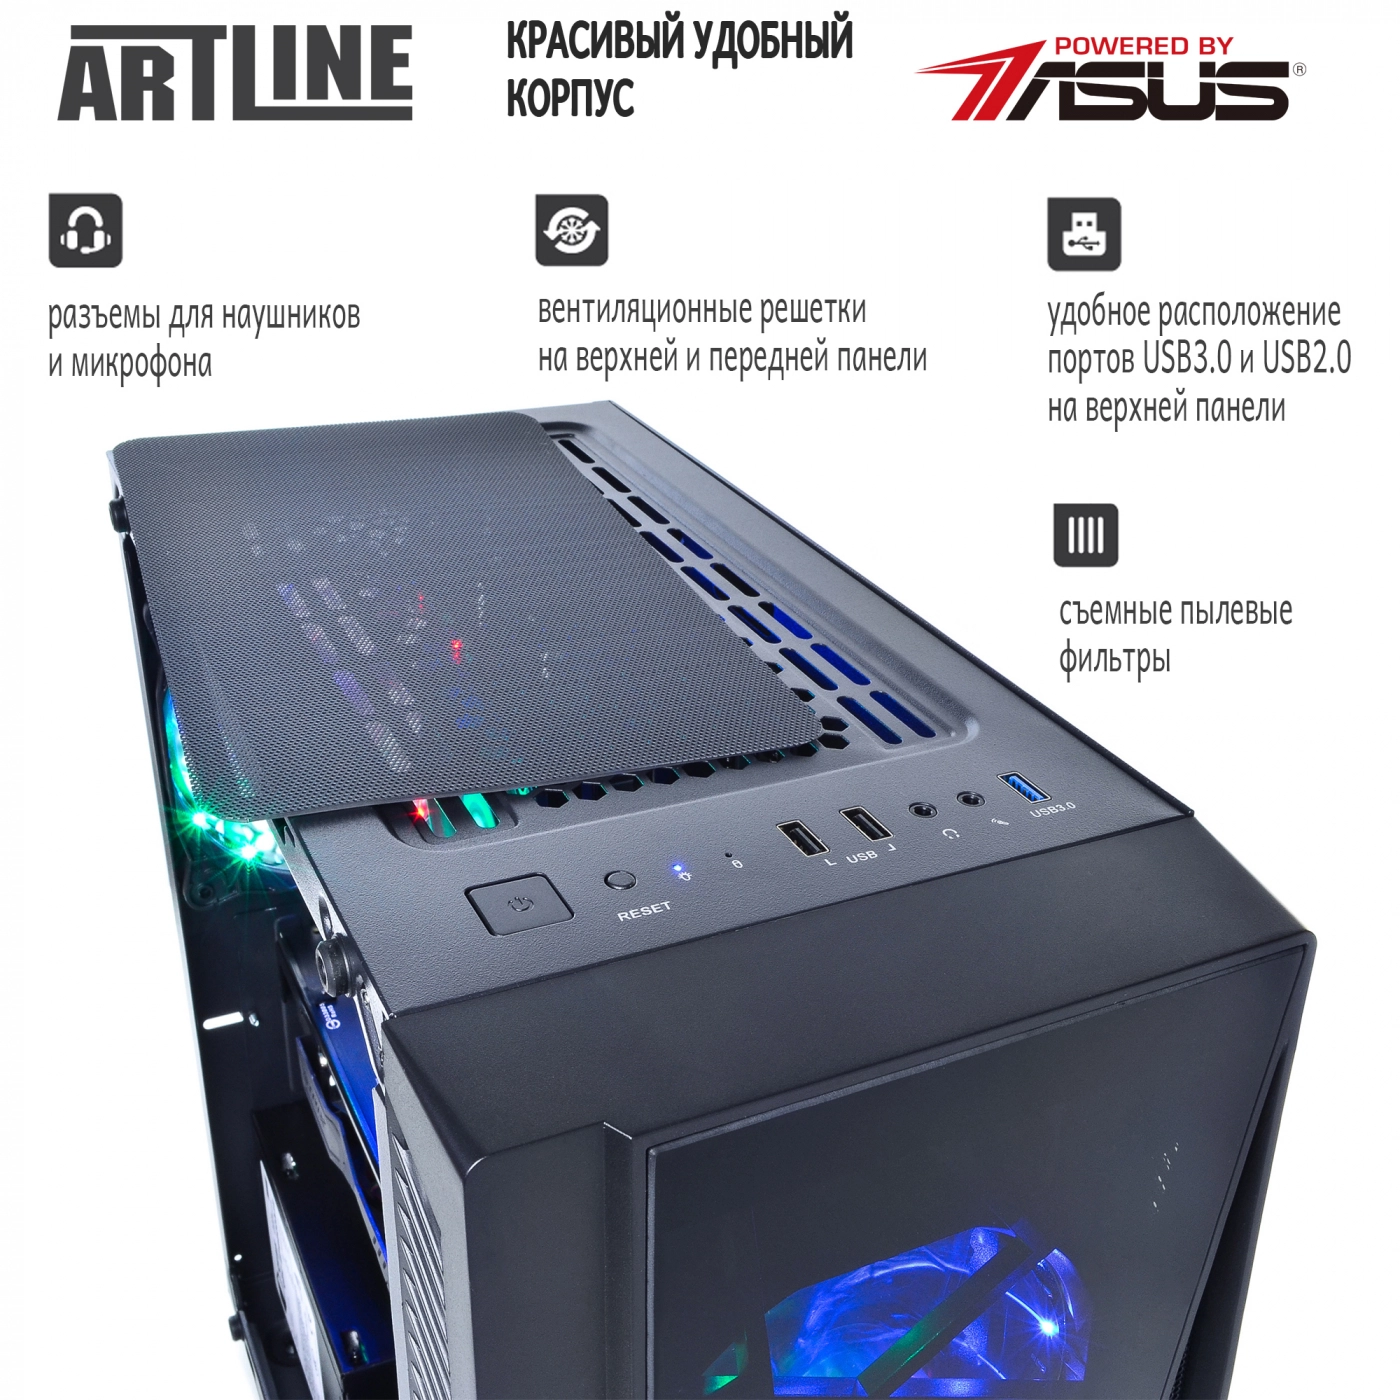 Купить Компьютер ARTLINE Gaming X37v28 - фото 3